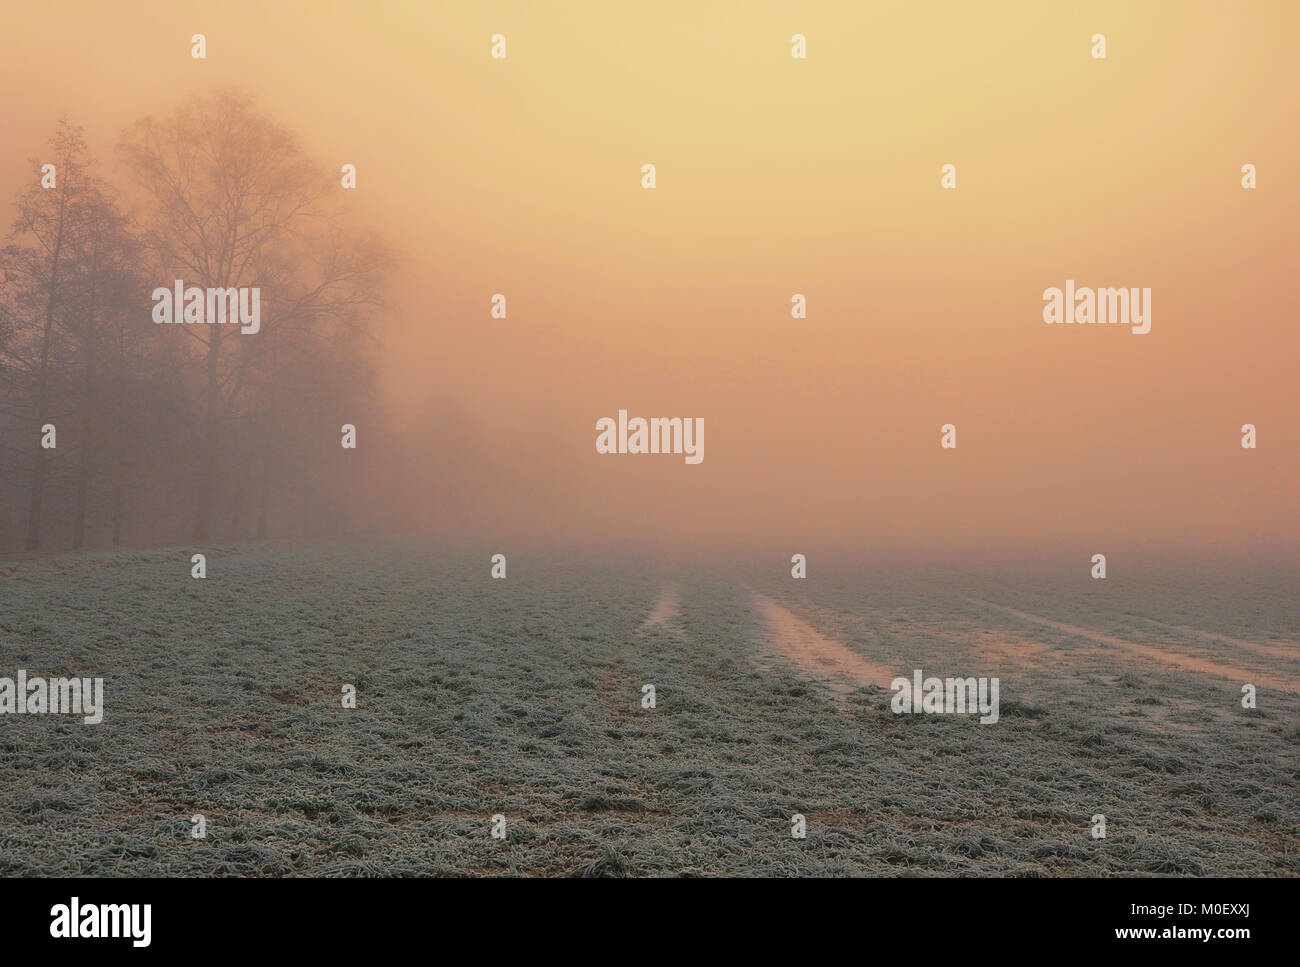 Rural landscape in mist, Bezirk, Aargau, Switzerland Stock Photo